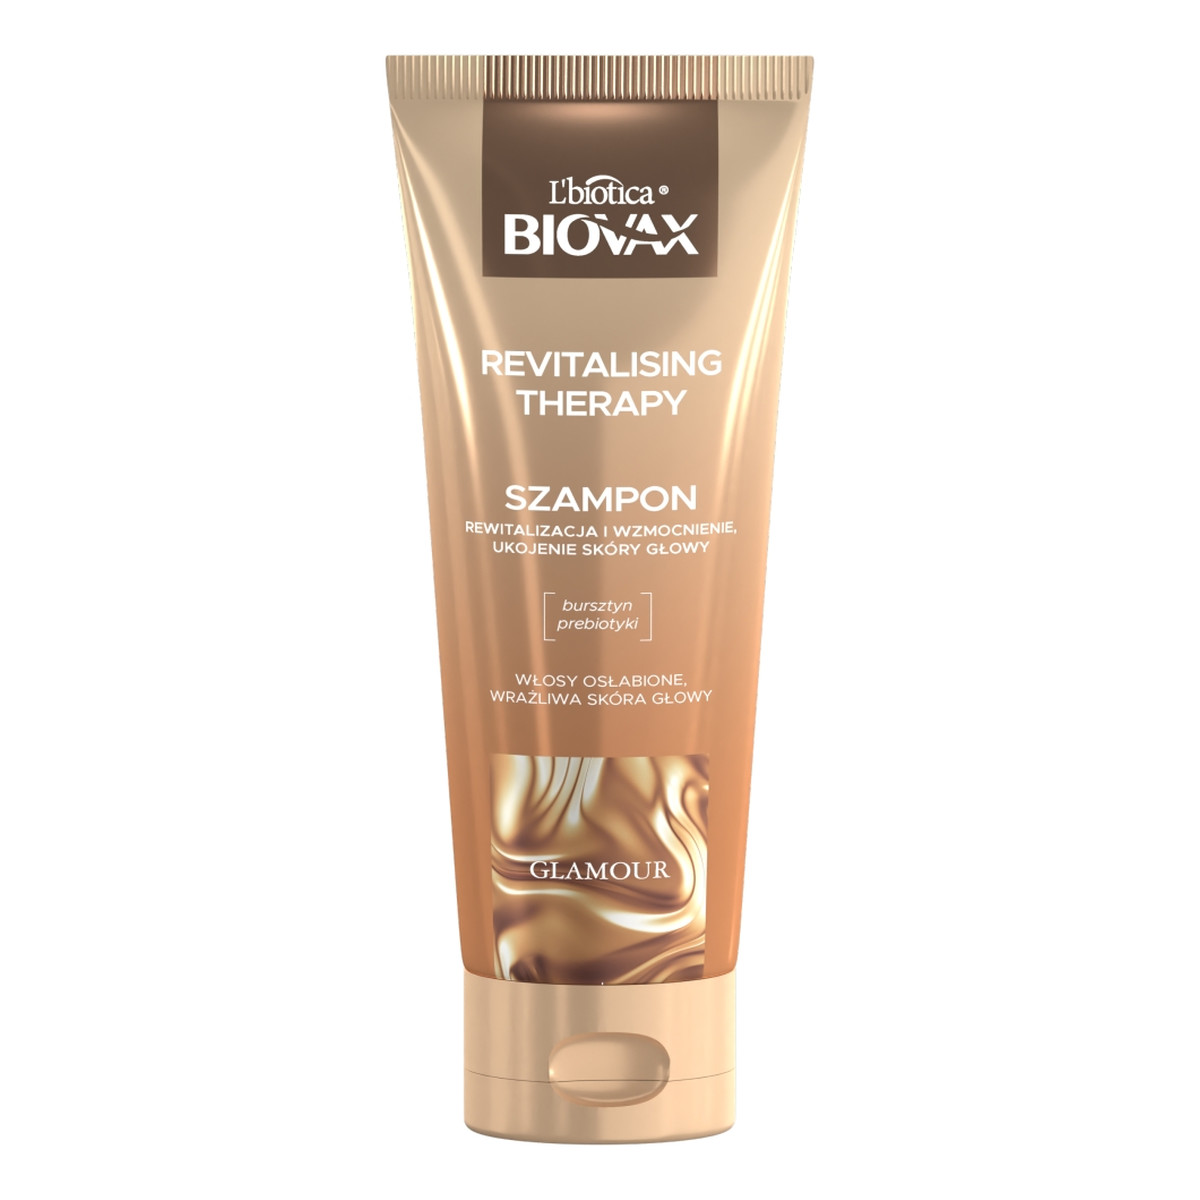 Biovax Glamour revitalising therapy szampon do włosów 200ml